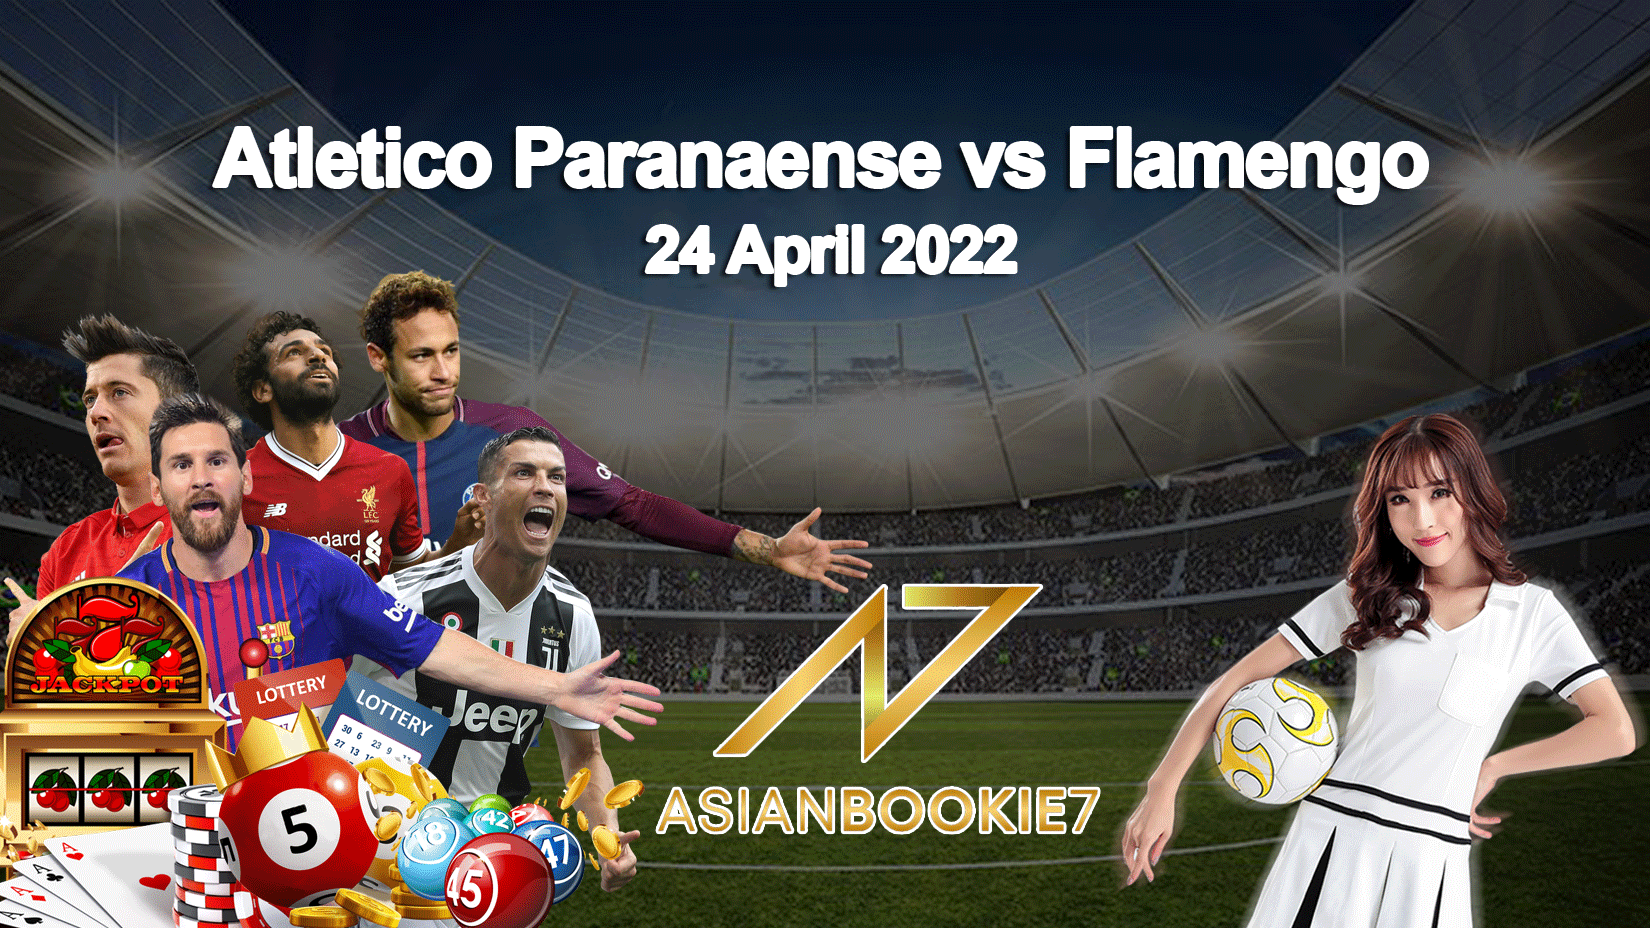 Prediksi Atletico Paranaense vs Flamengo 24 April 2022